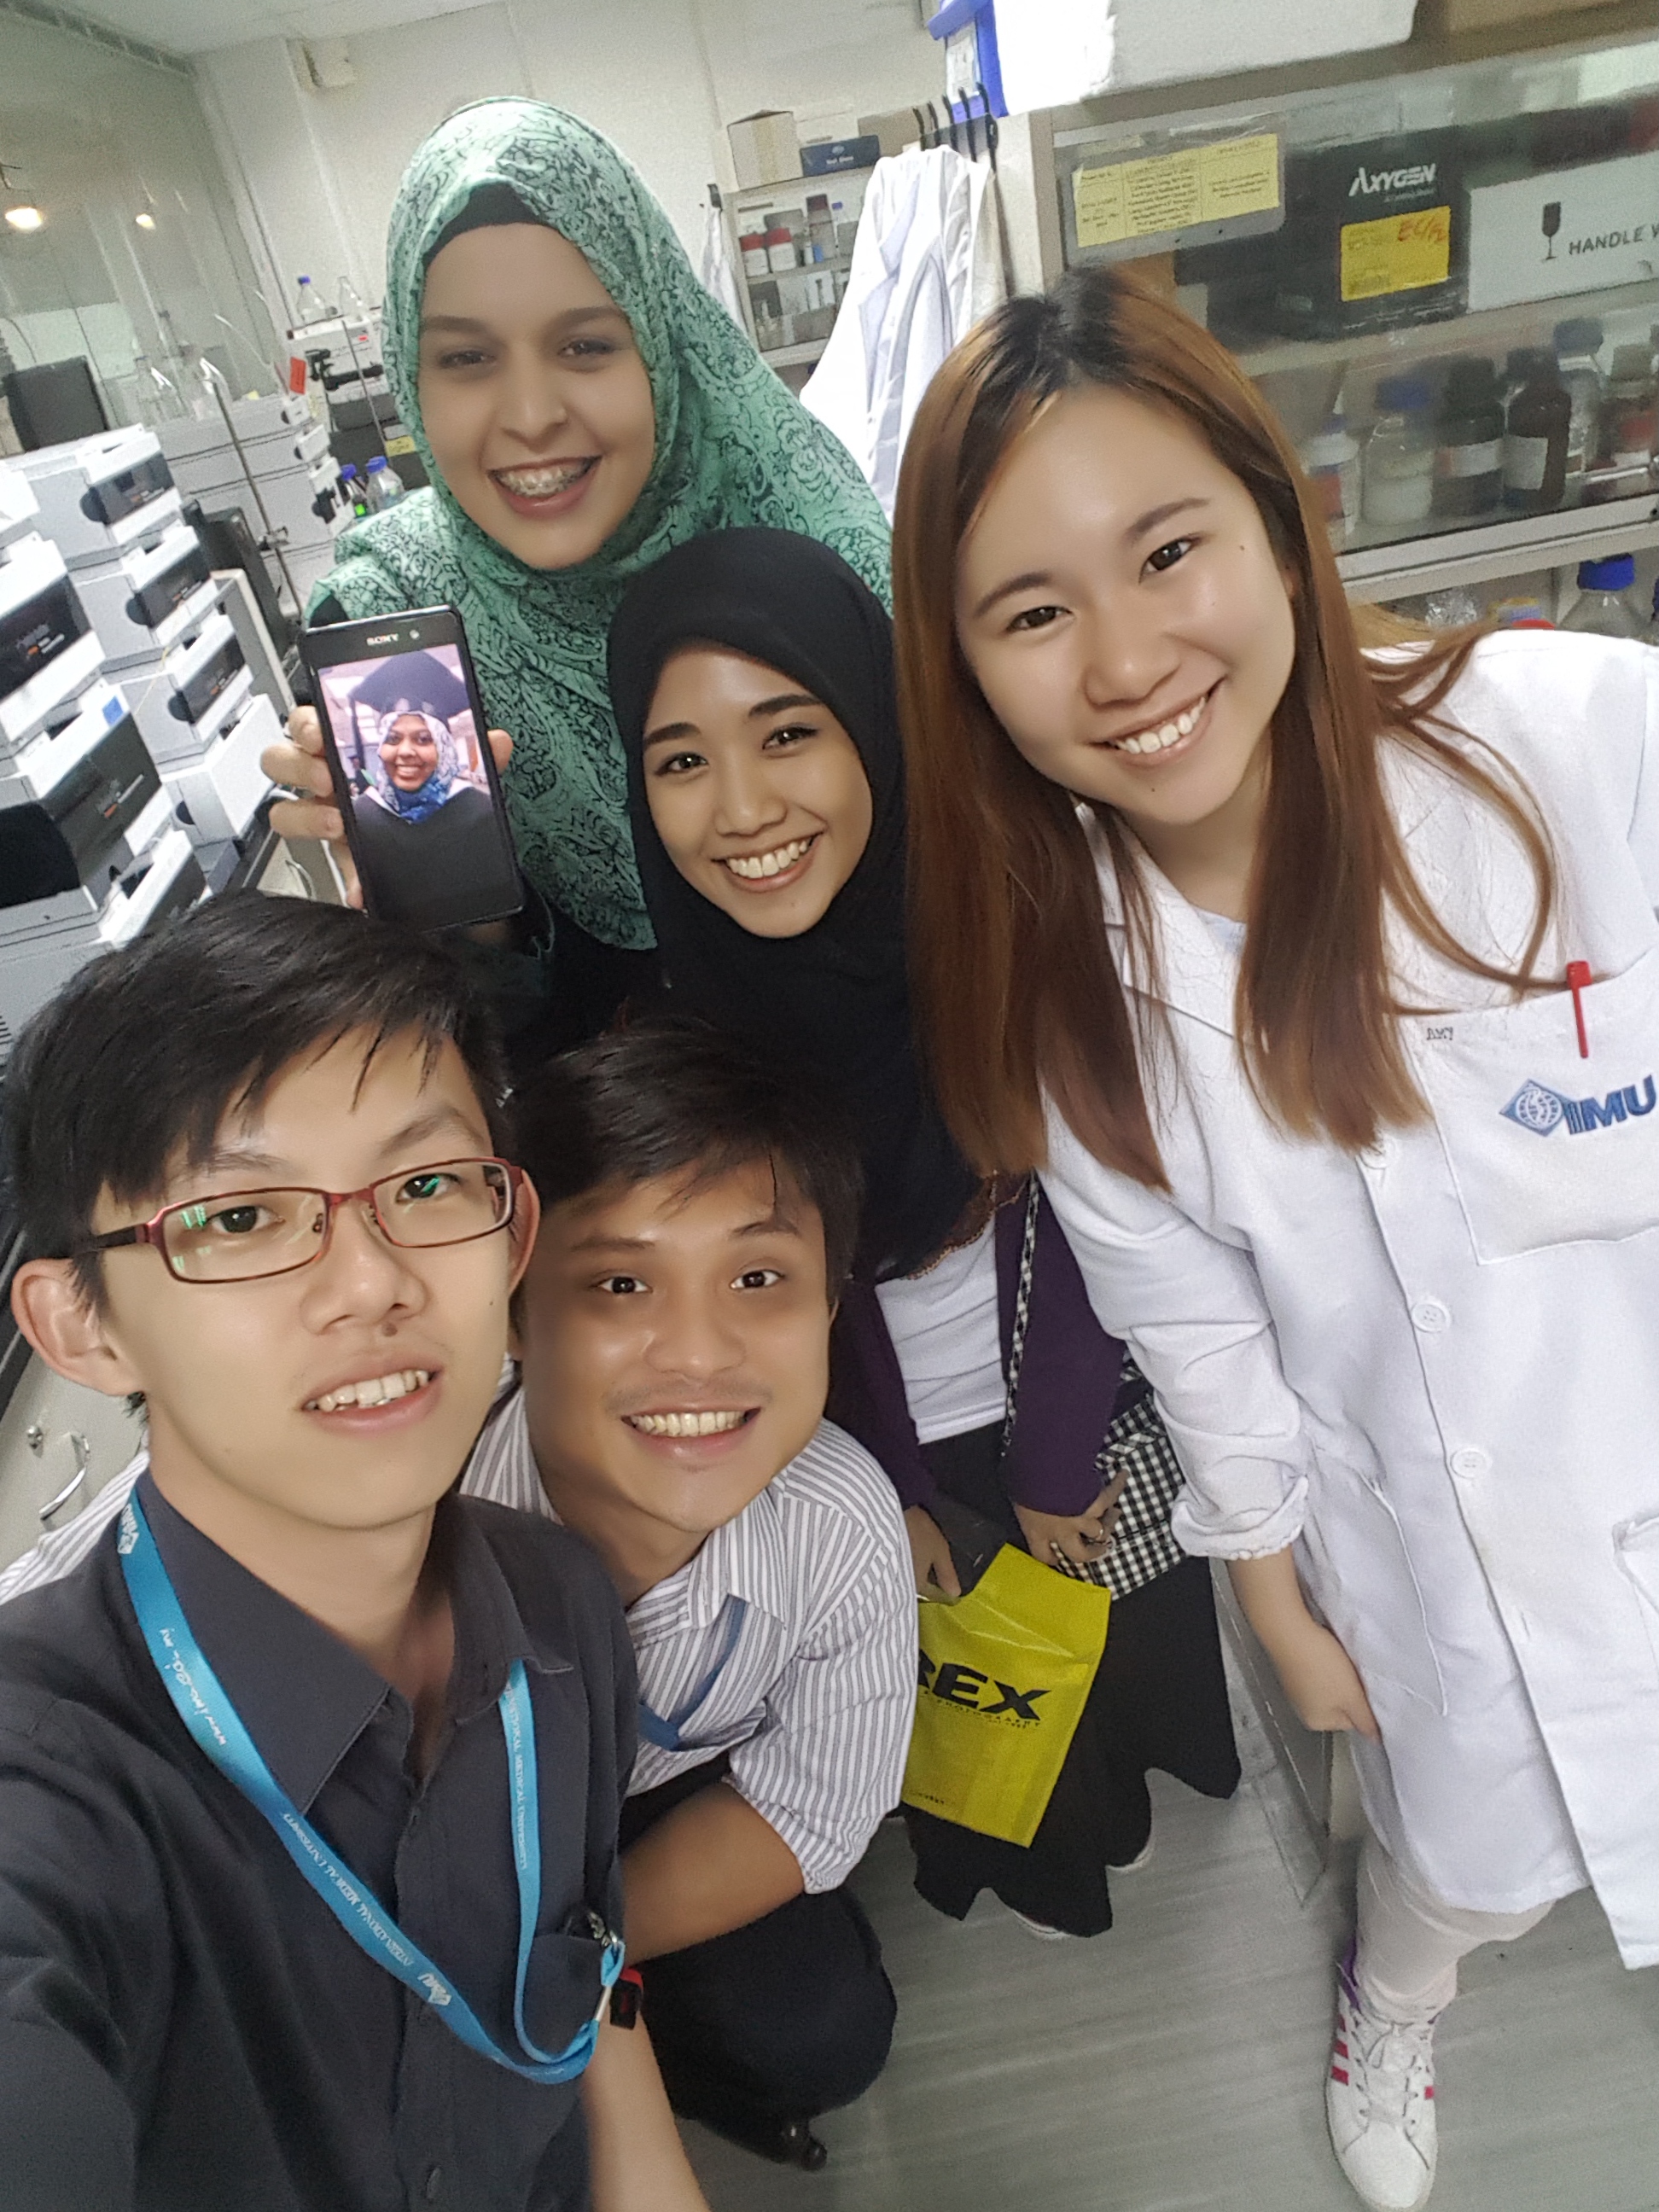 IMU Biomedical Science Alumnus with IMU friends